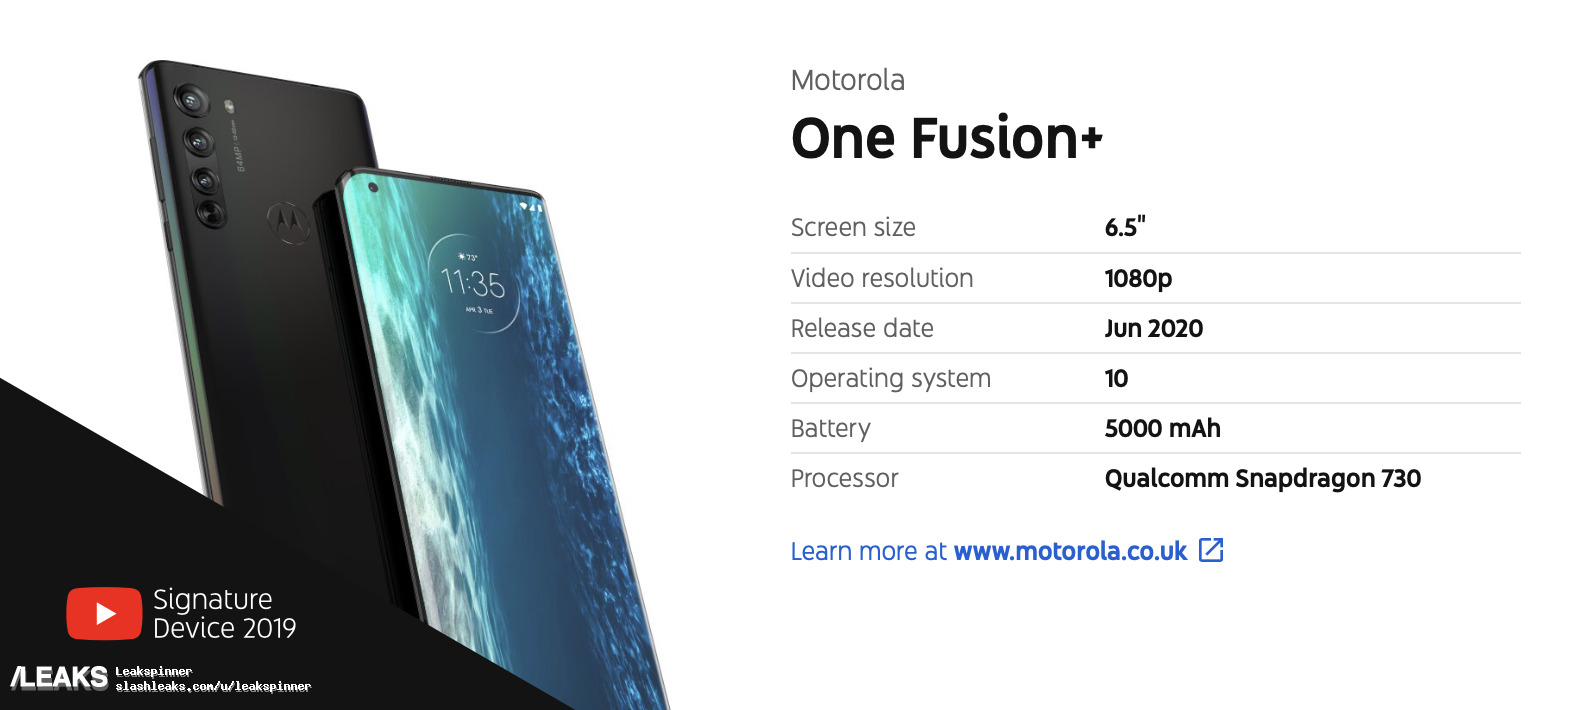 Характеристики Motorola One Fusion+